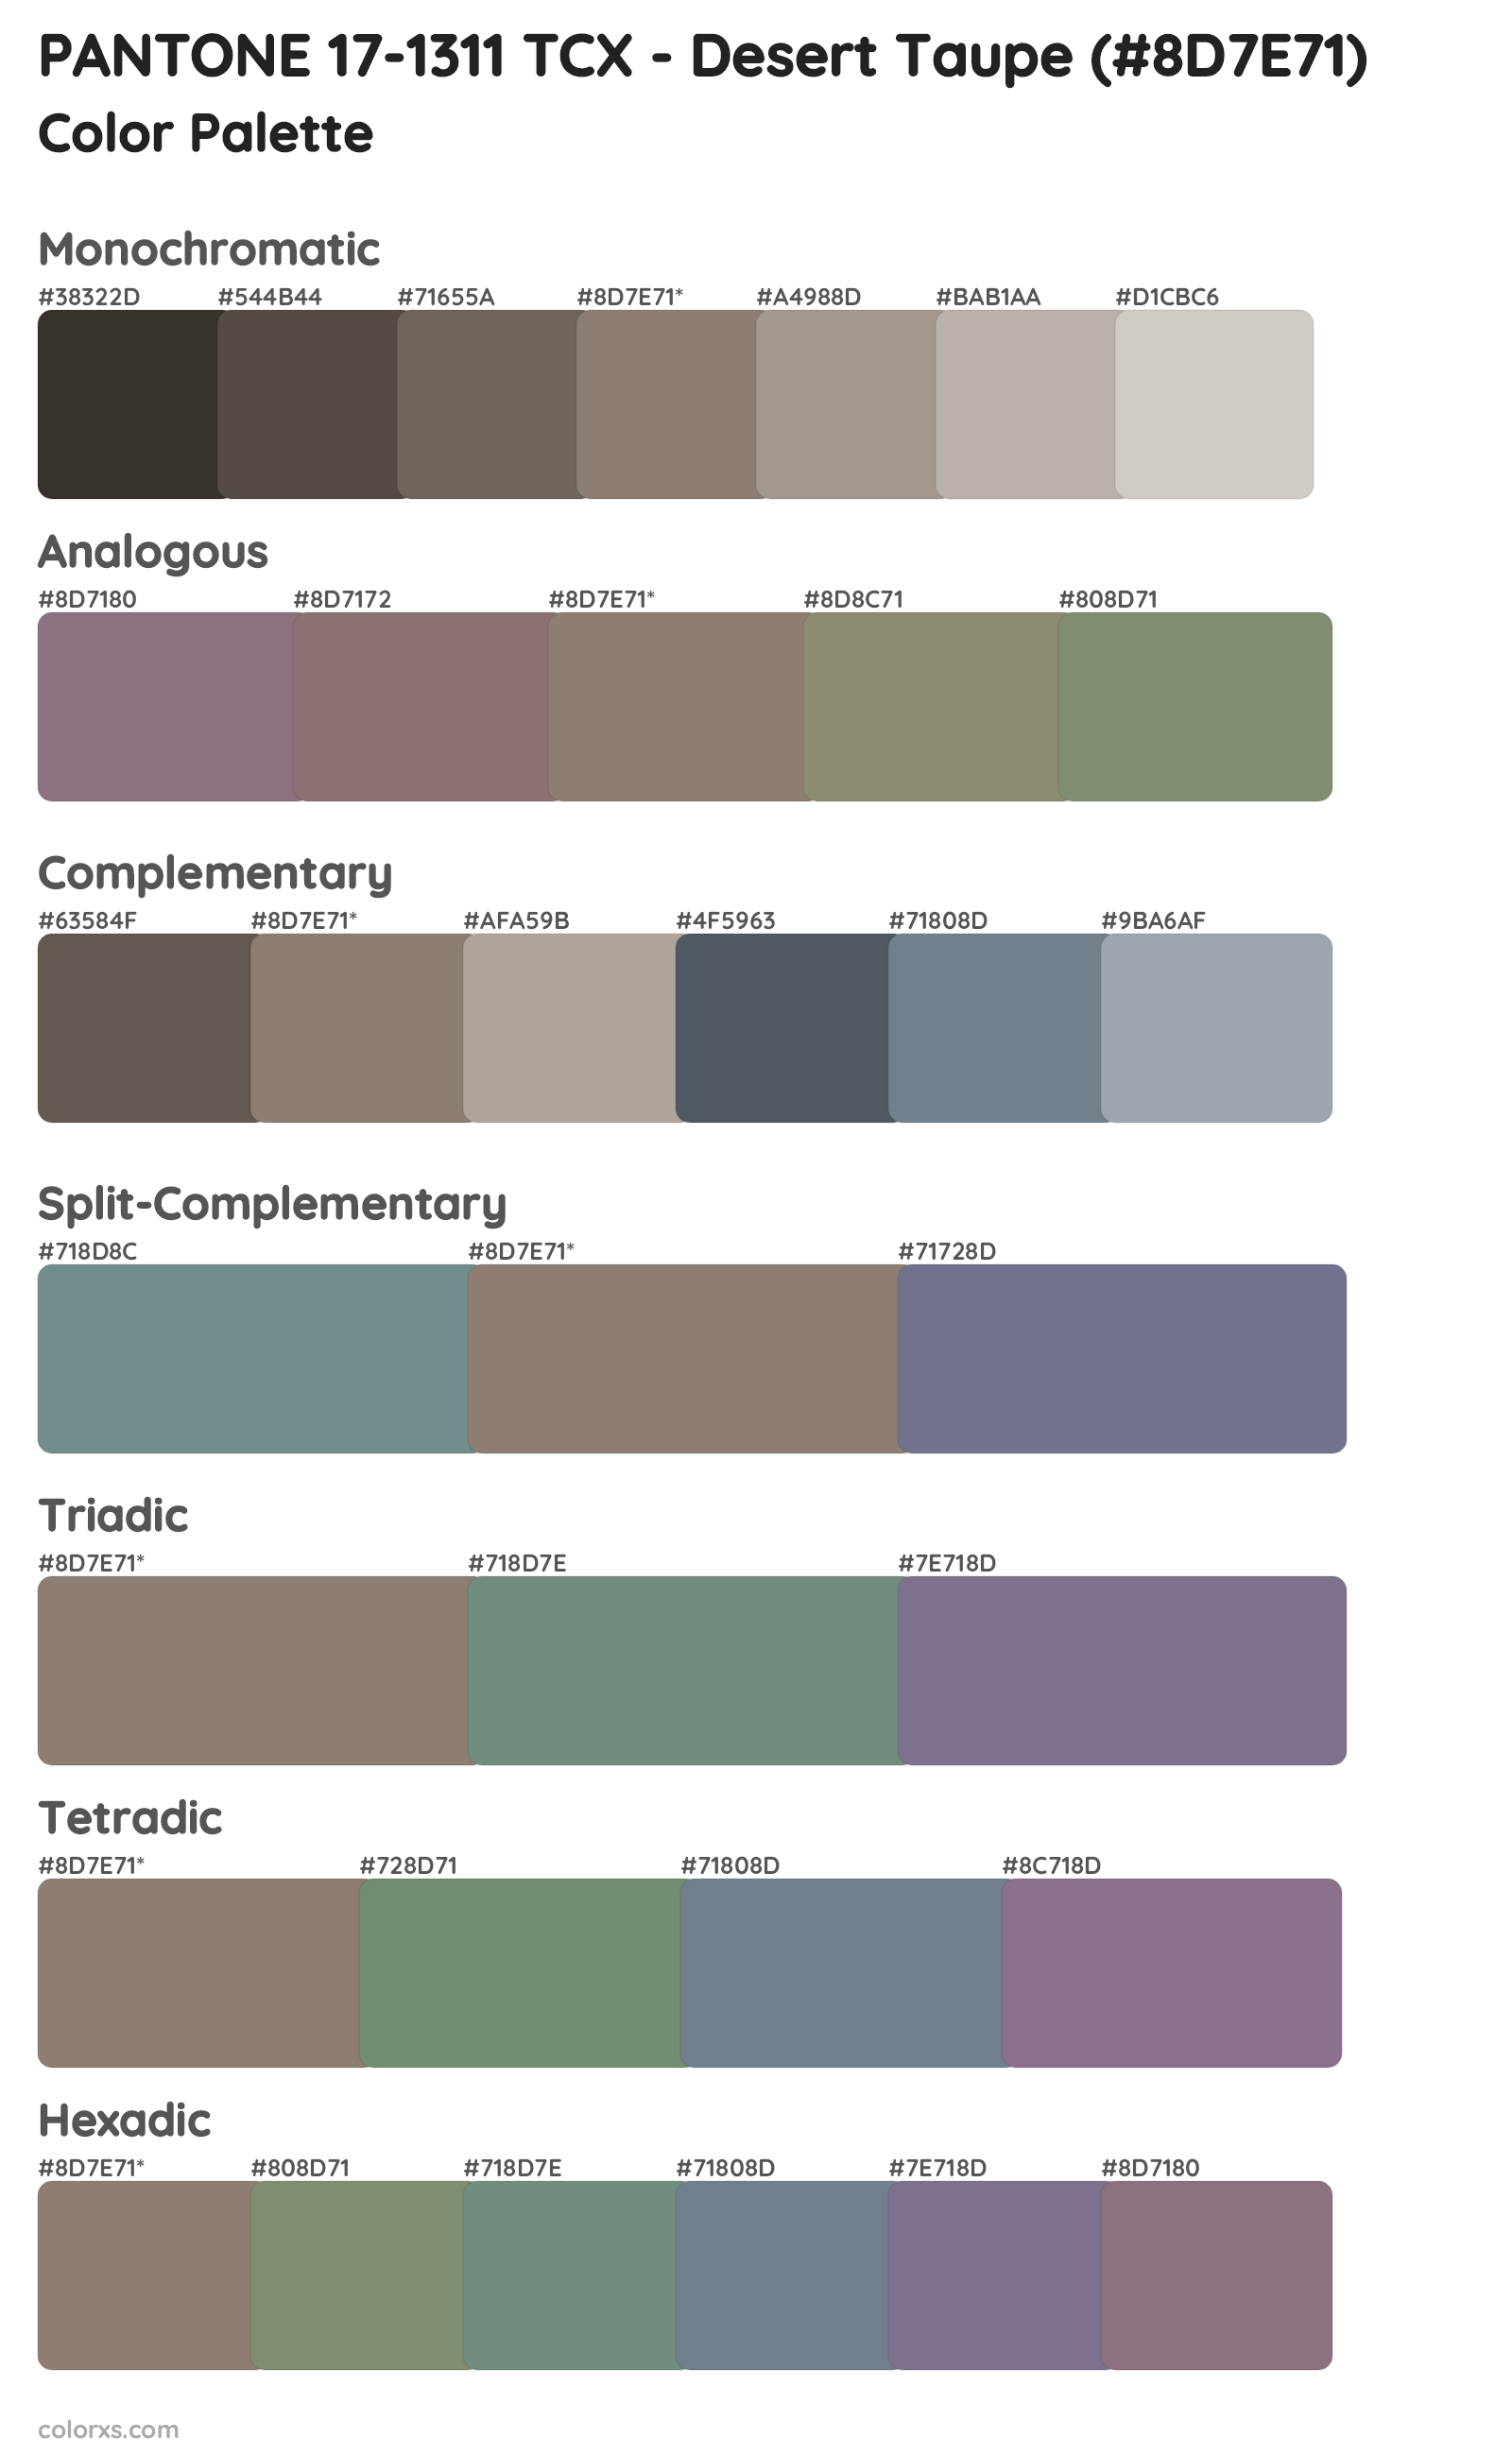 PANTONE 17-1311 TCX - Desert Taupe Color Scheme Palettes